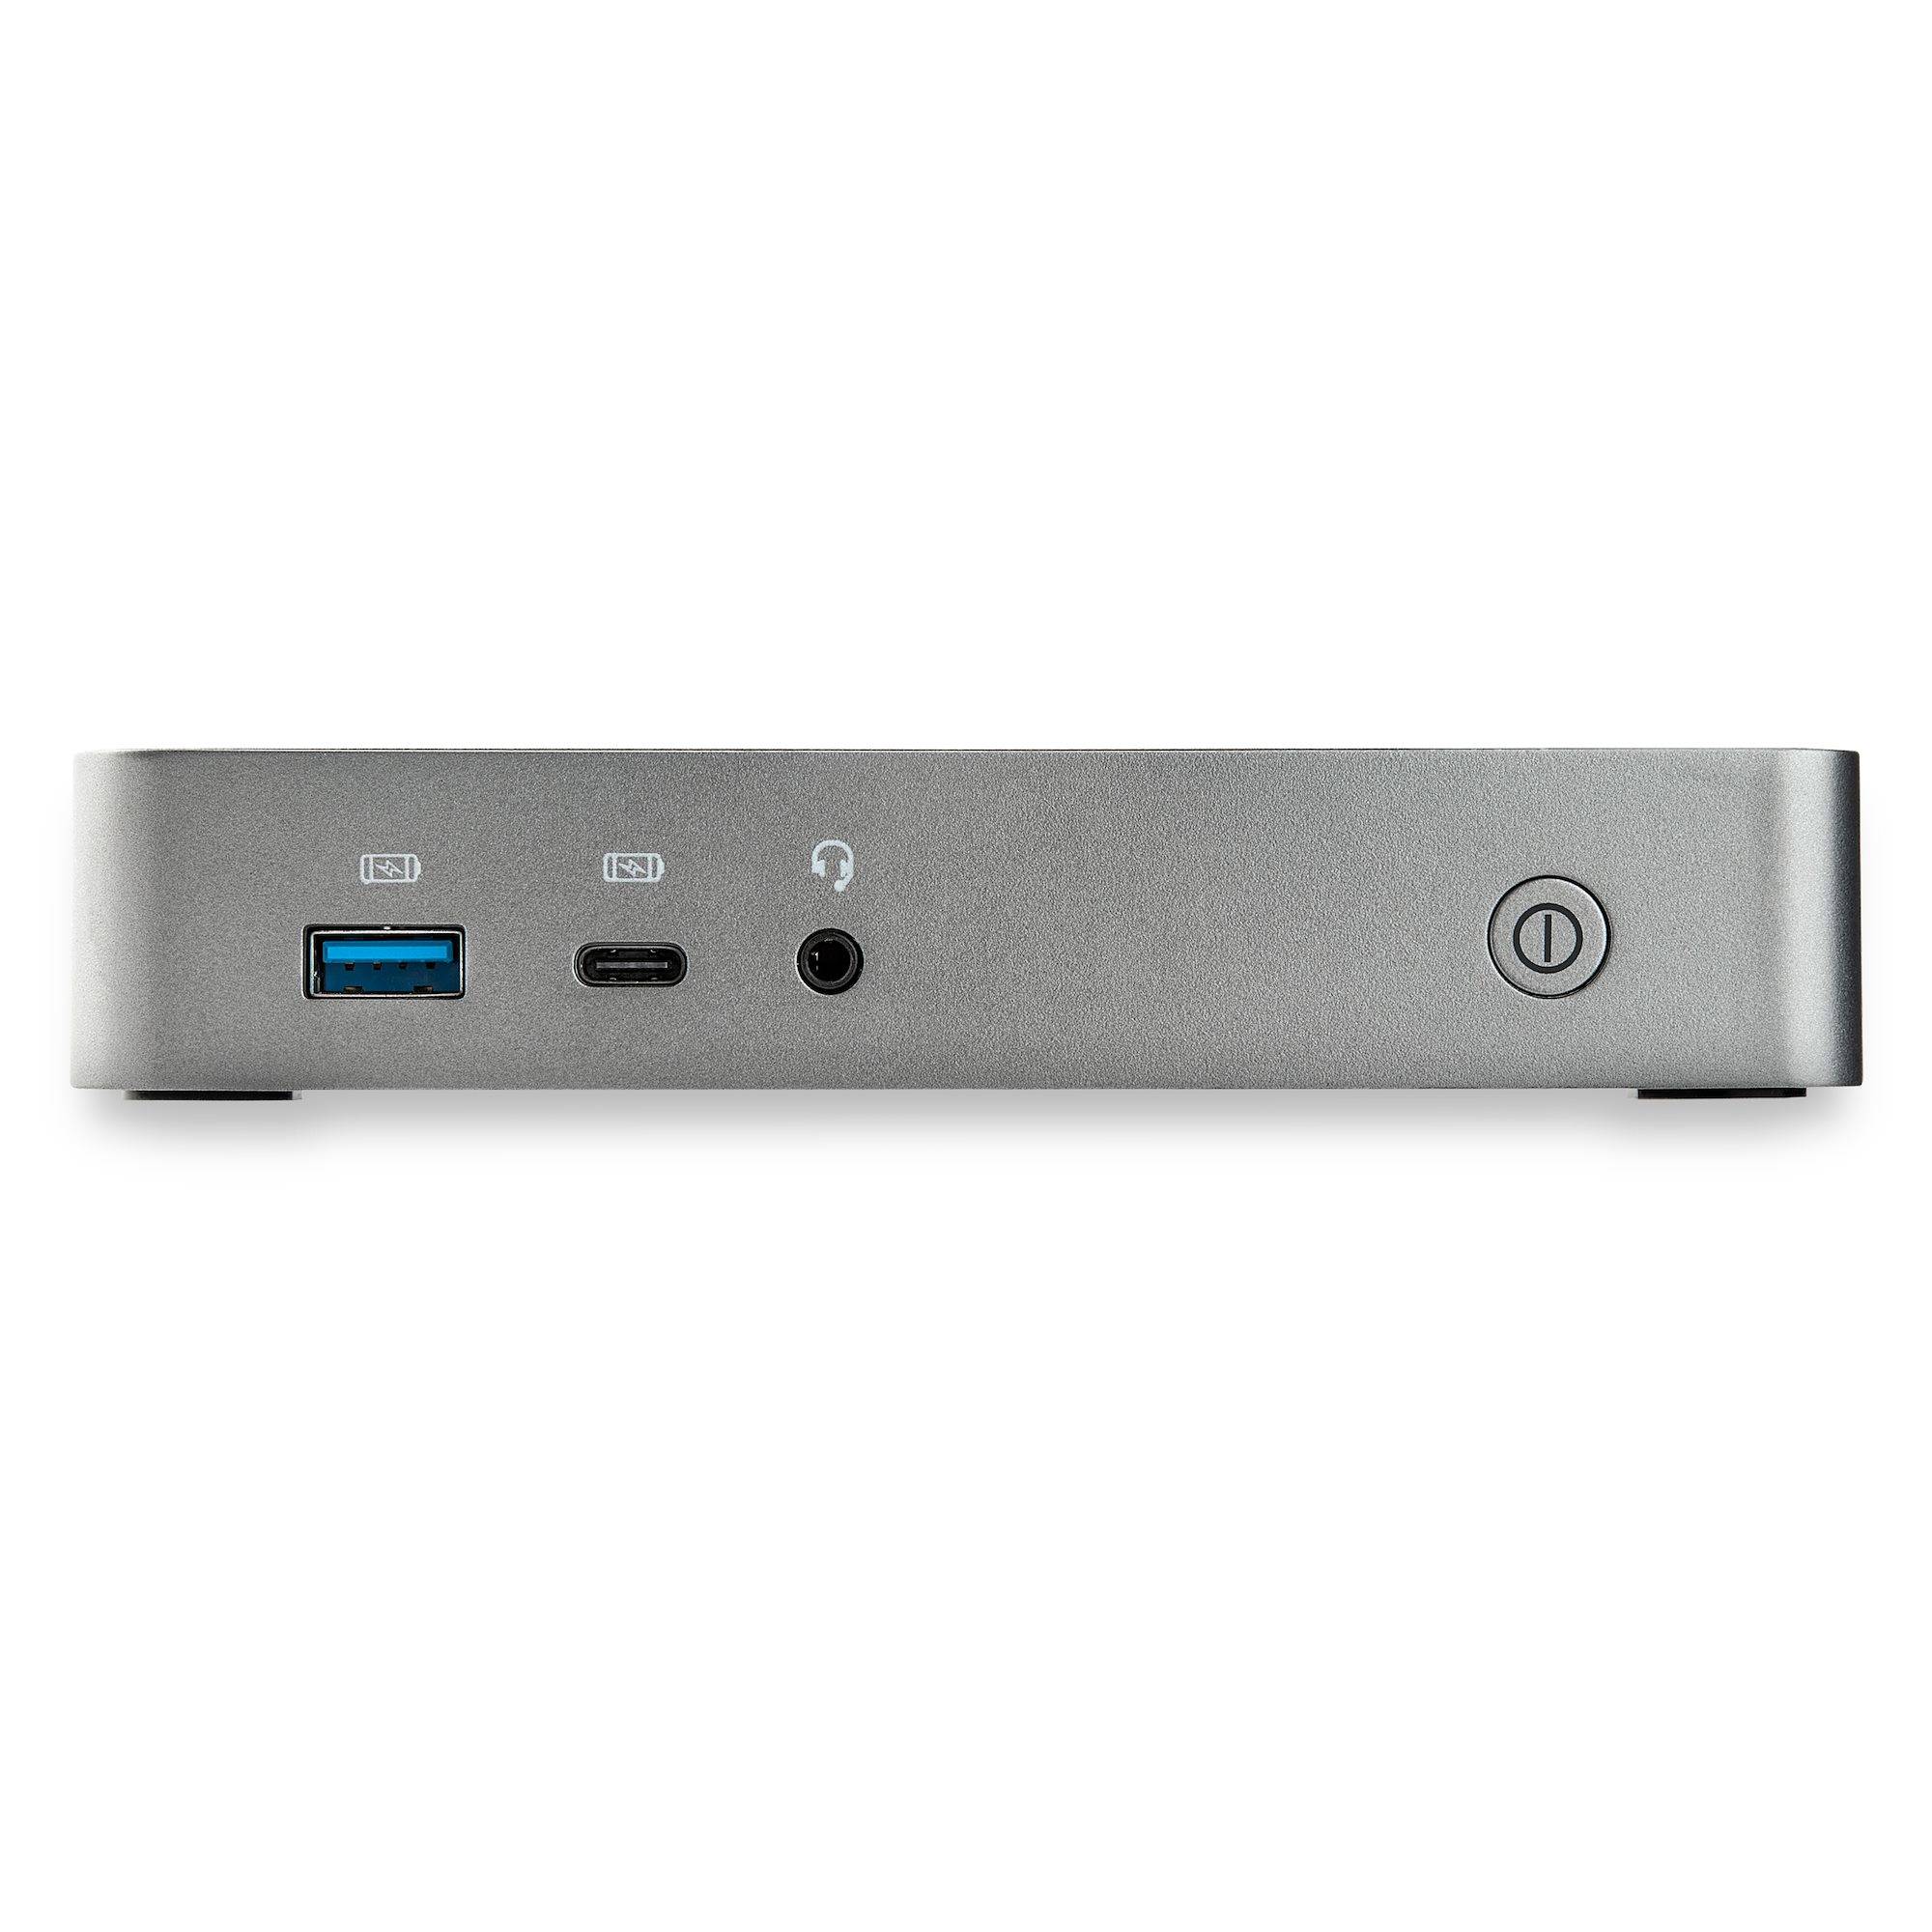 Rca Informatique - image du produit : USB-C DOCK FOR 2 HDMI MONITORS 60W PD GBE